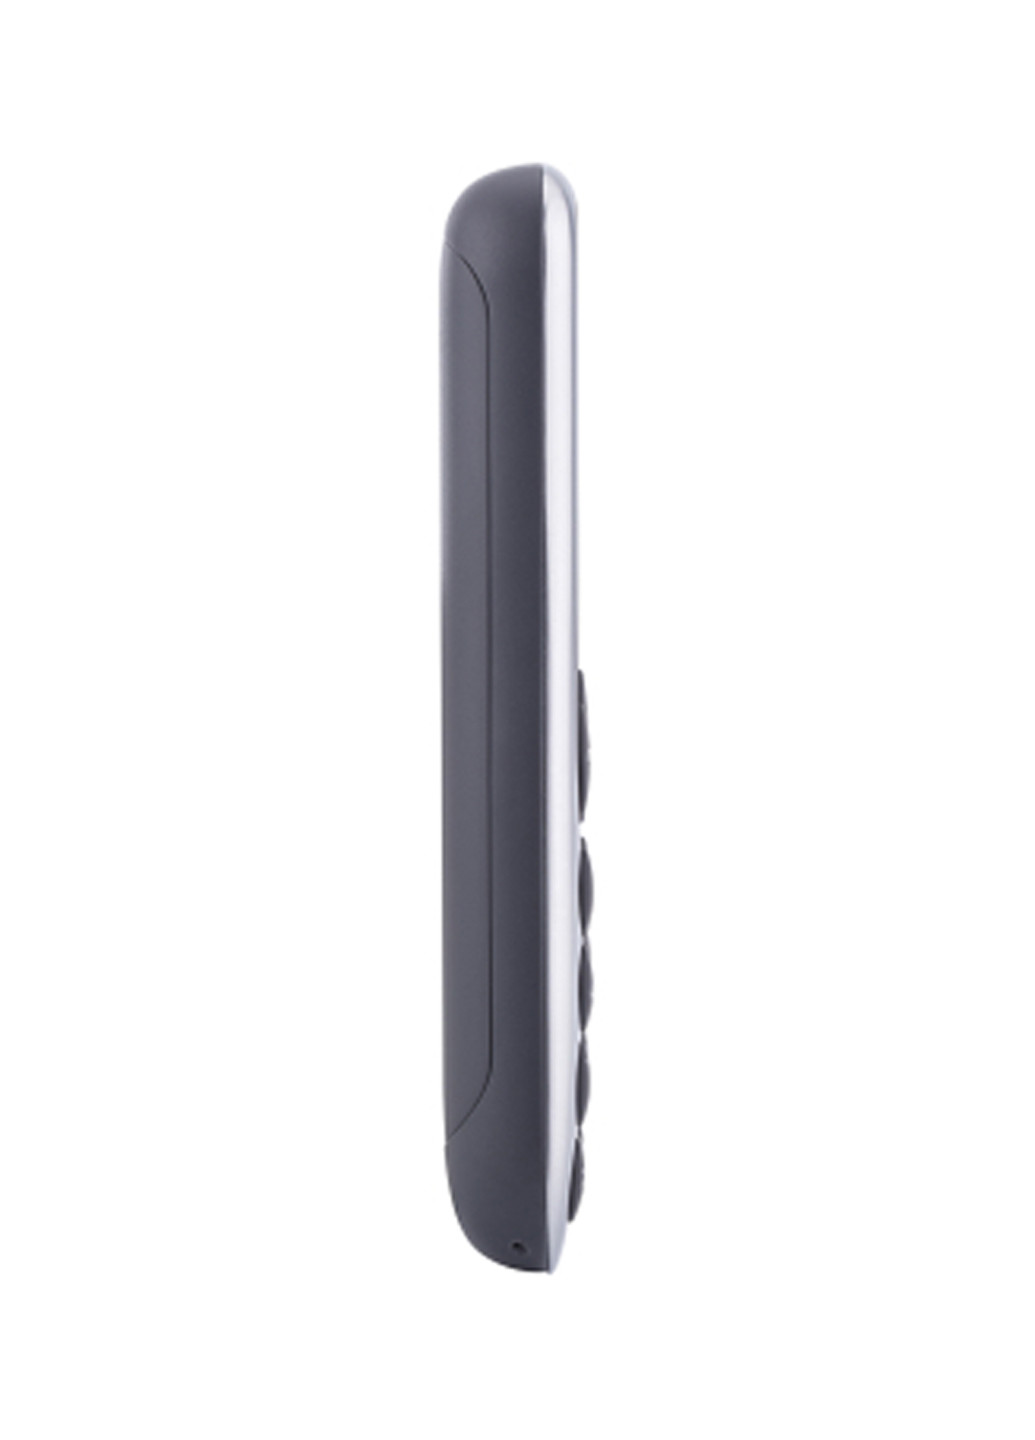 Мобільний телефон Nomi i177 metal grey (134344435)